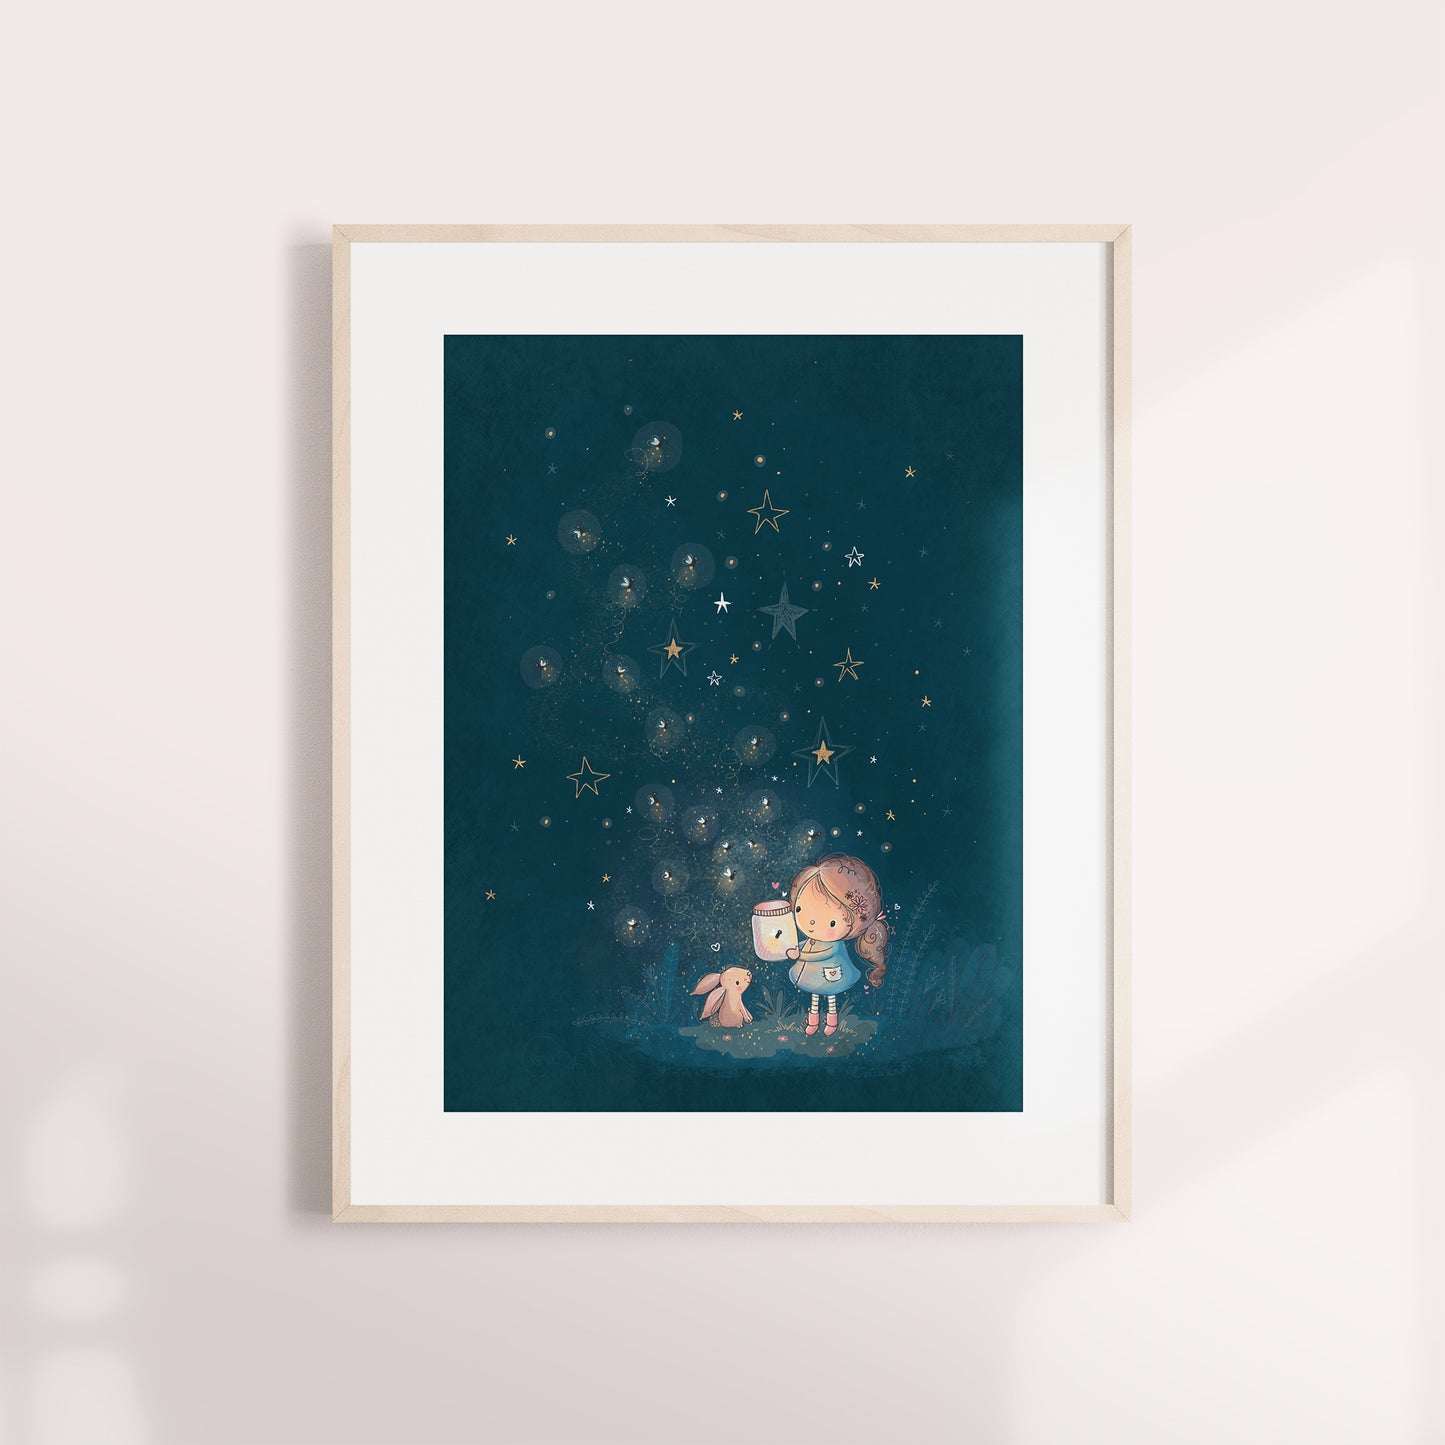 'Fireflies' Children's Wall Art Print